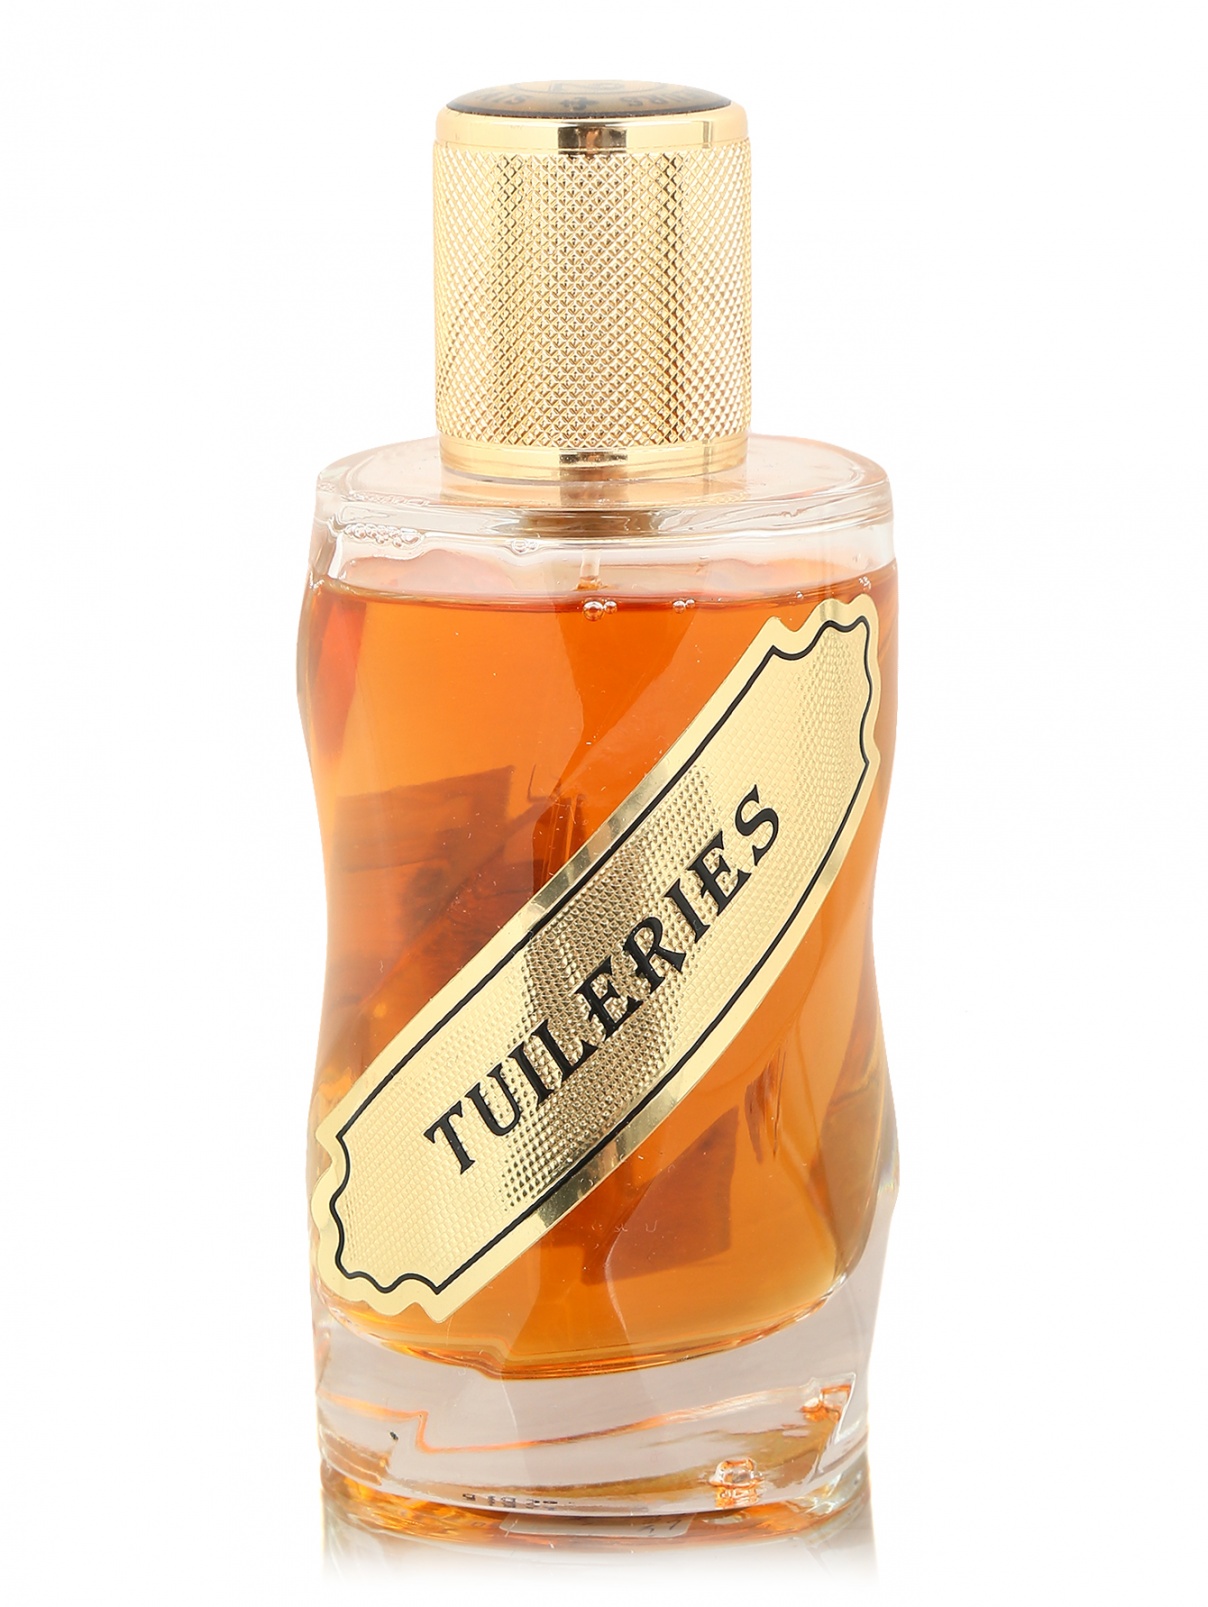 12 Parfumeurs Francais Tuileries